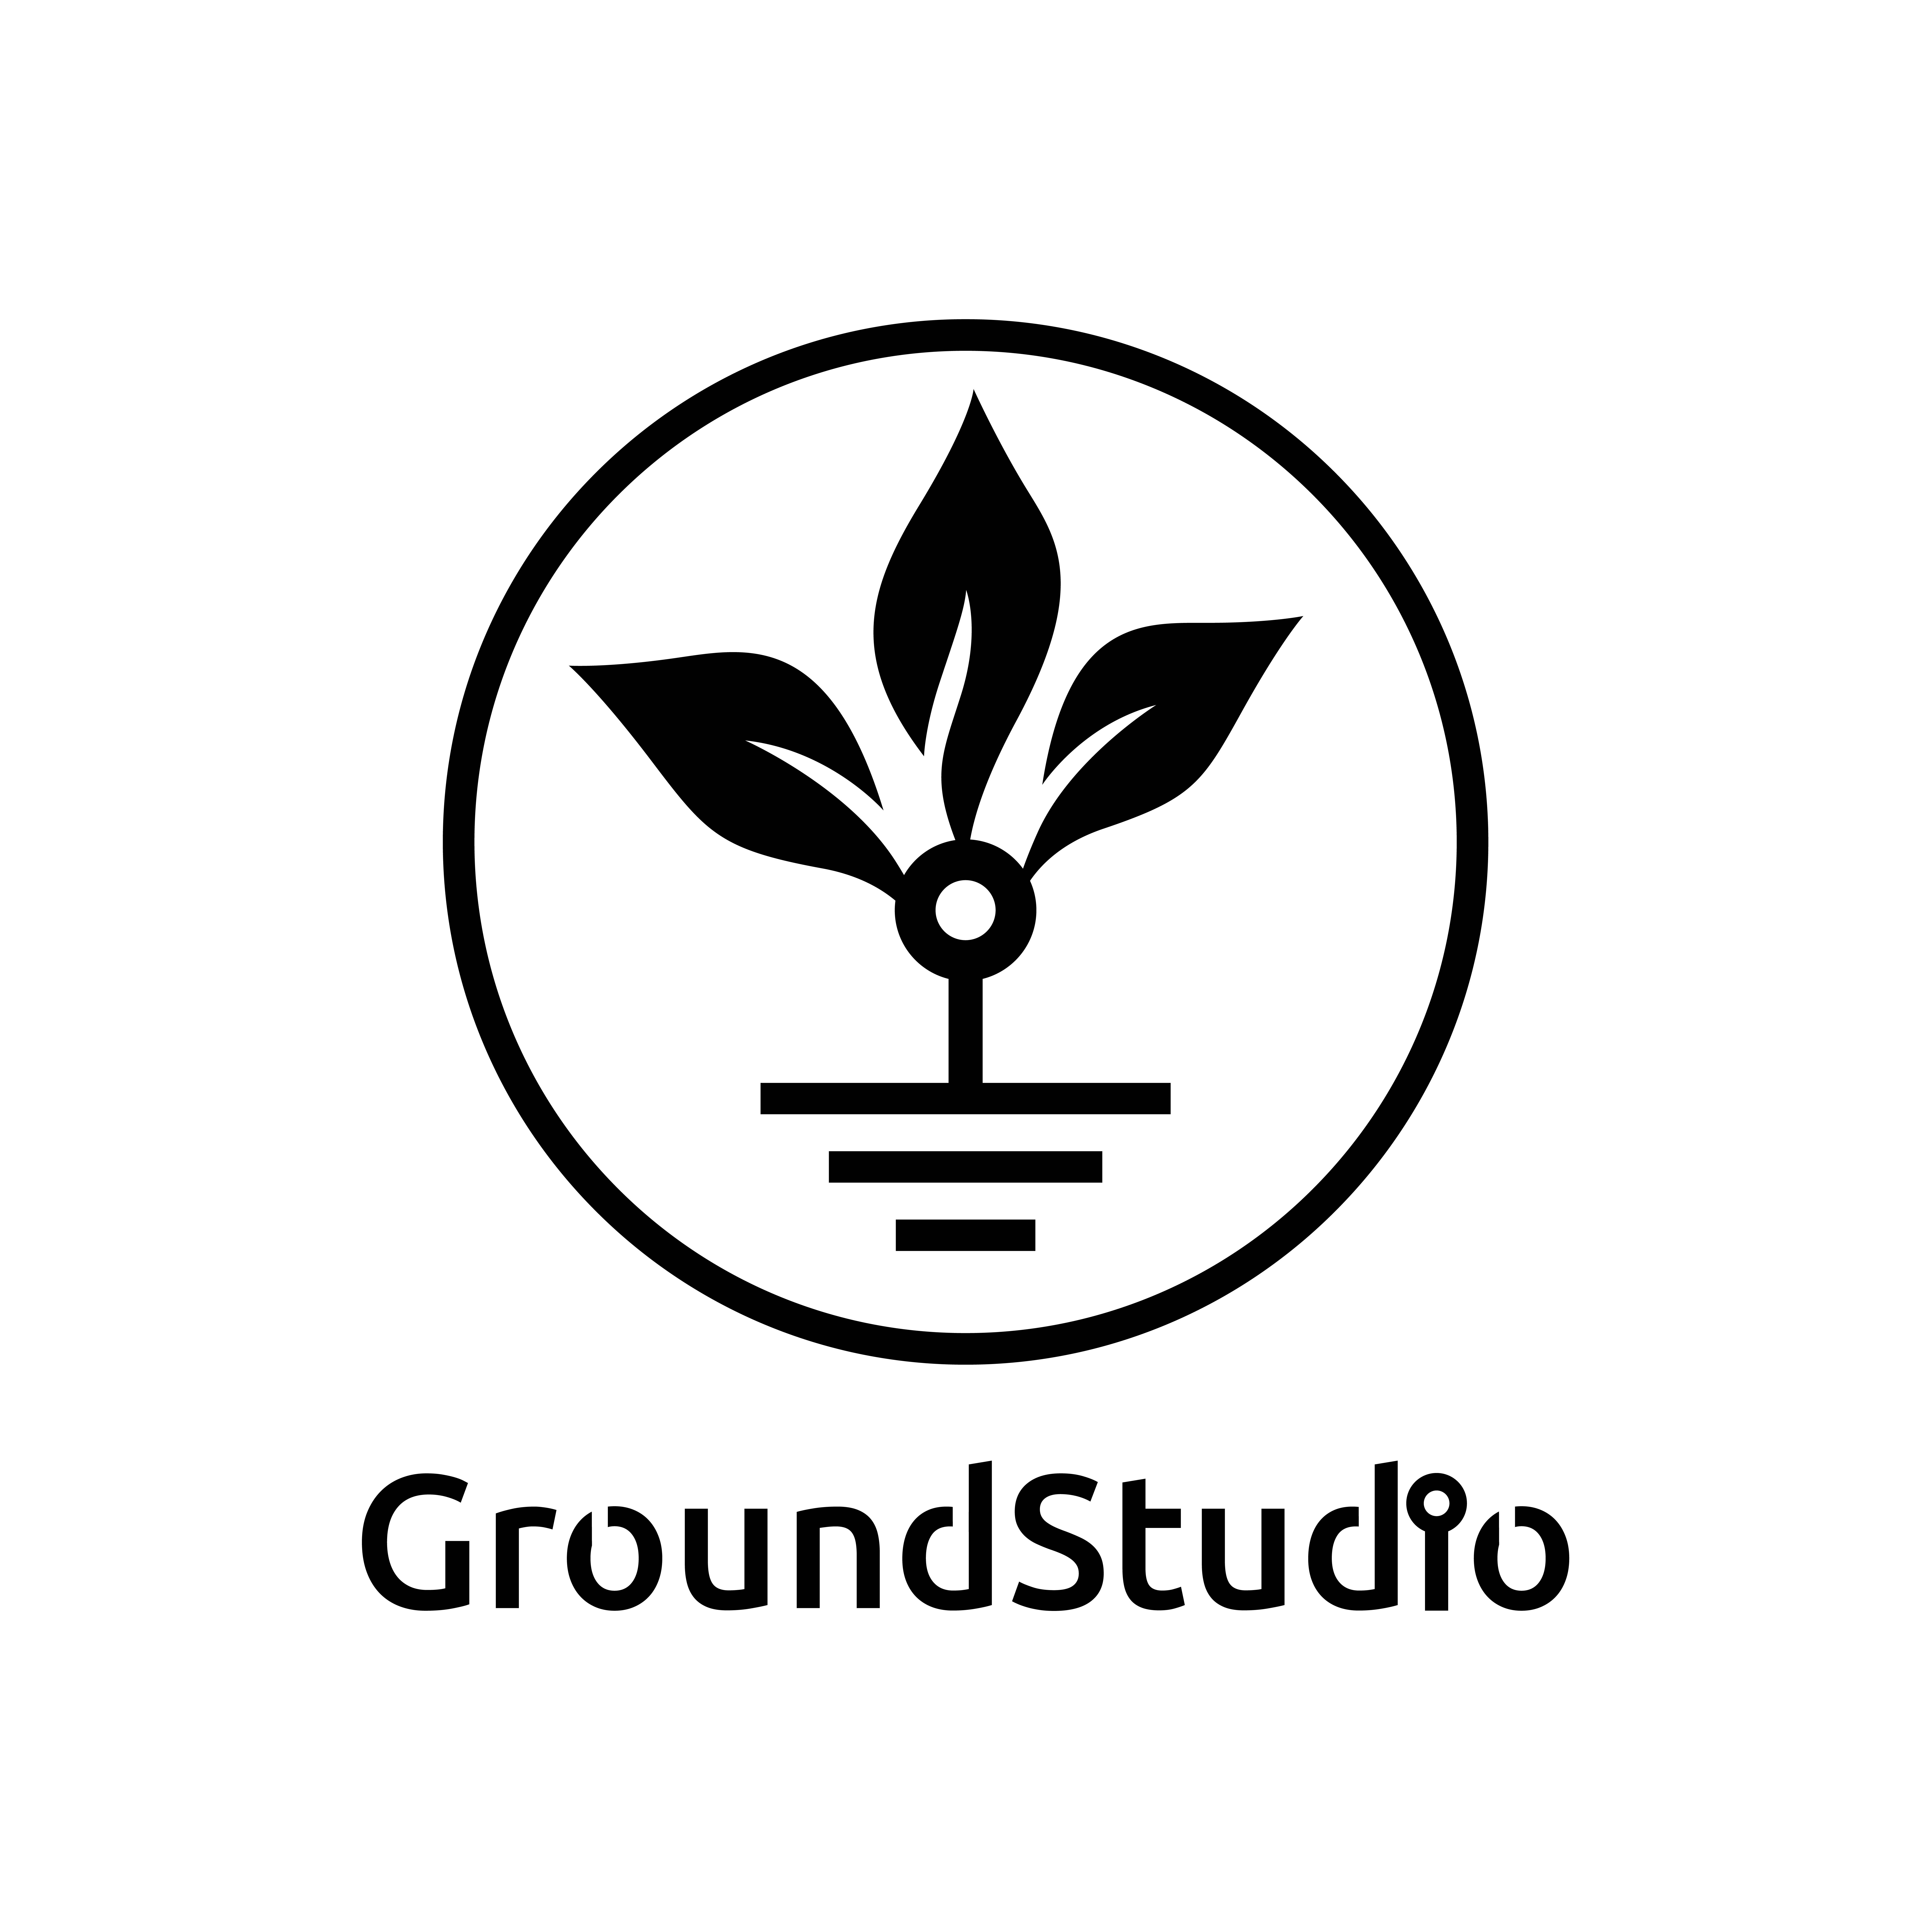 GroundStudio-01.jpg